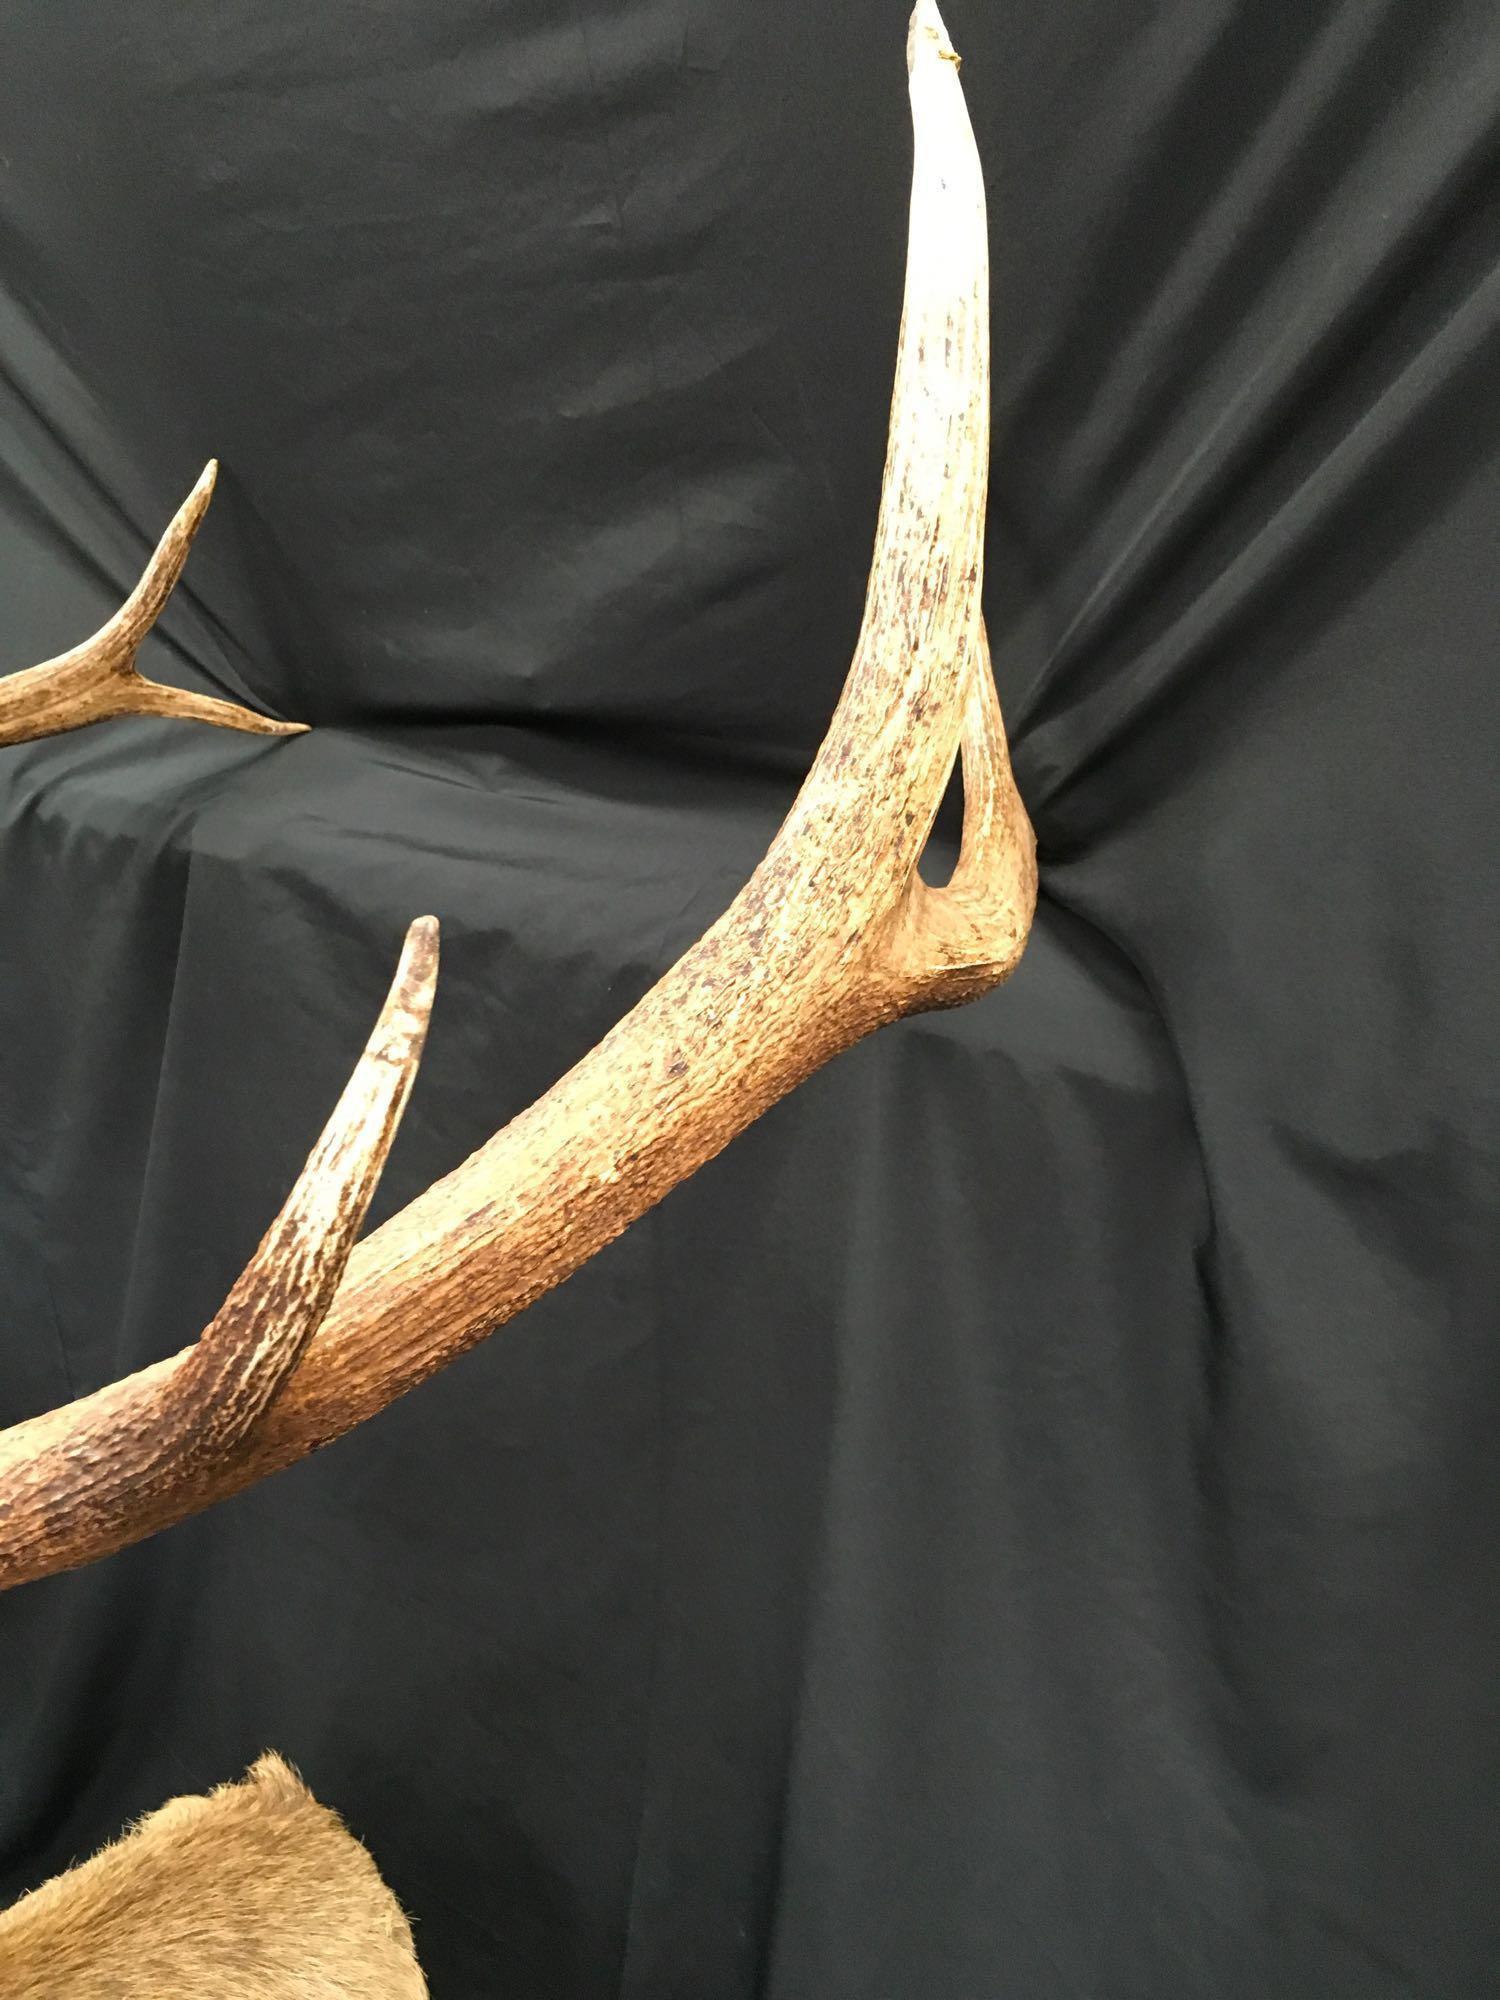 Large Taxidermy Elk. Shoulder to nose 48".